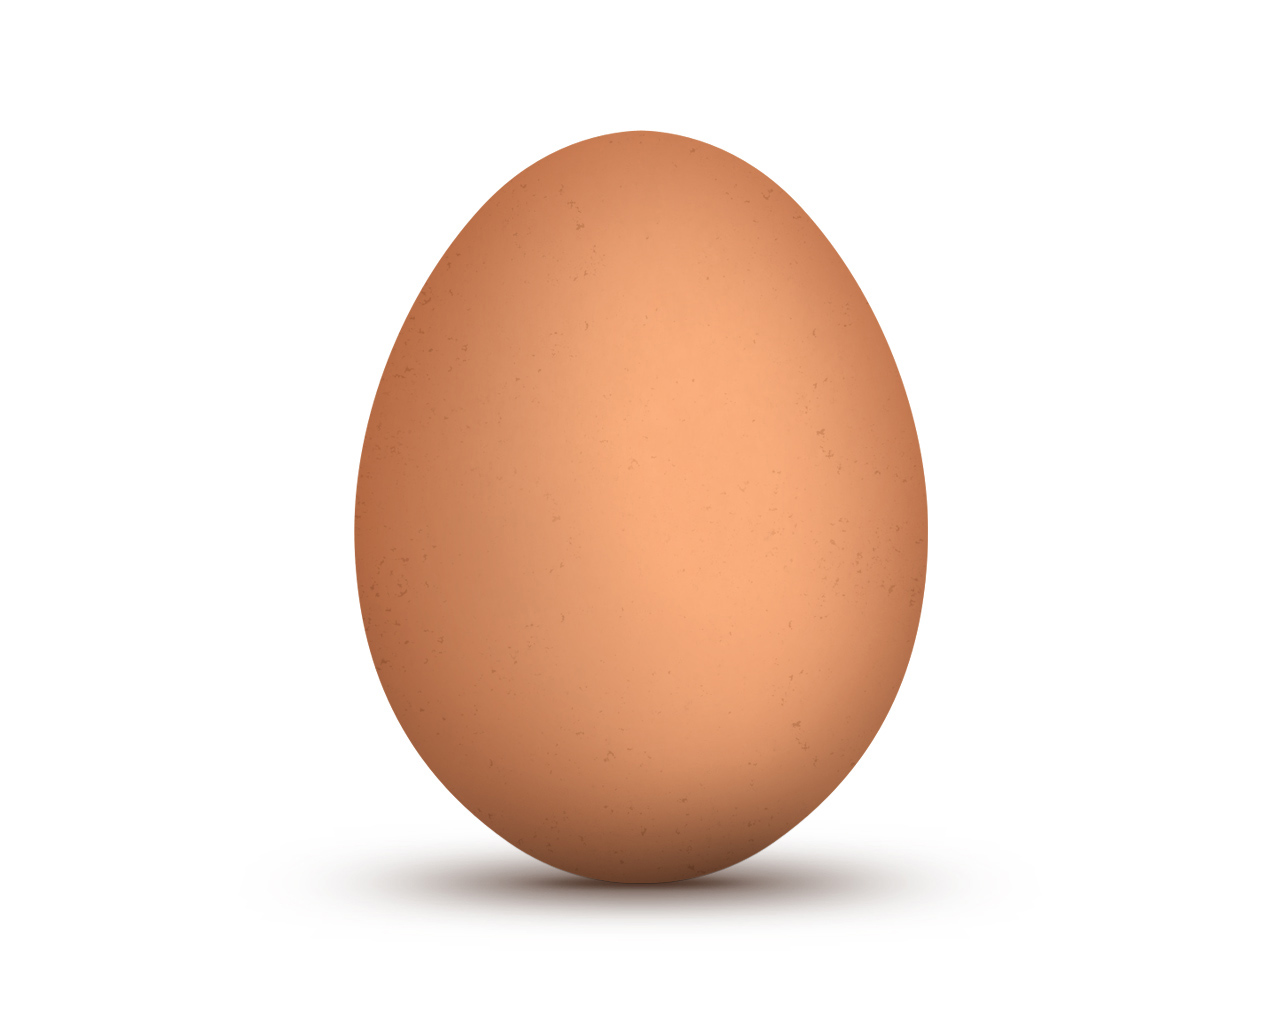 Yumurtanın fotosu İnstagramda rekord qırdı 